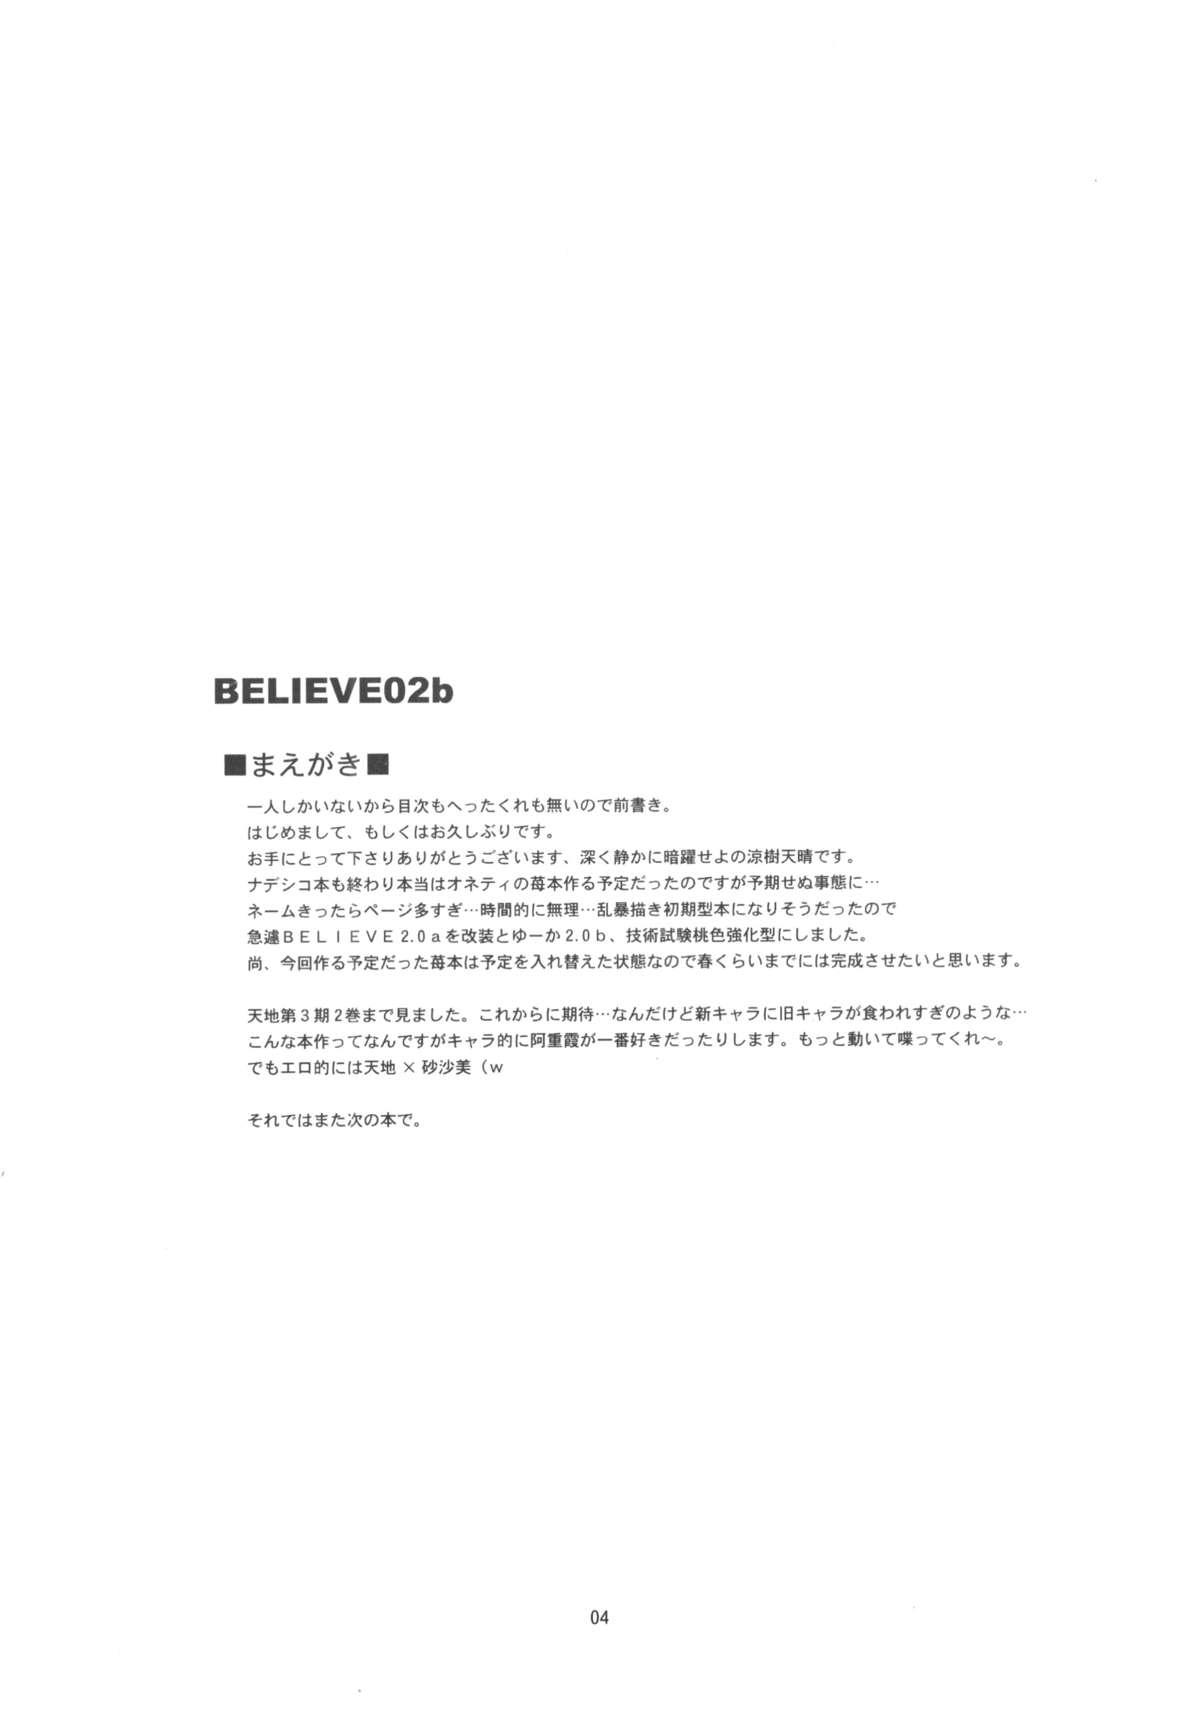 Believe 02b 2